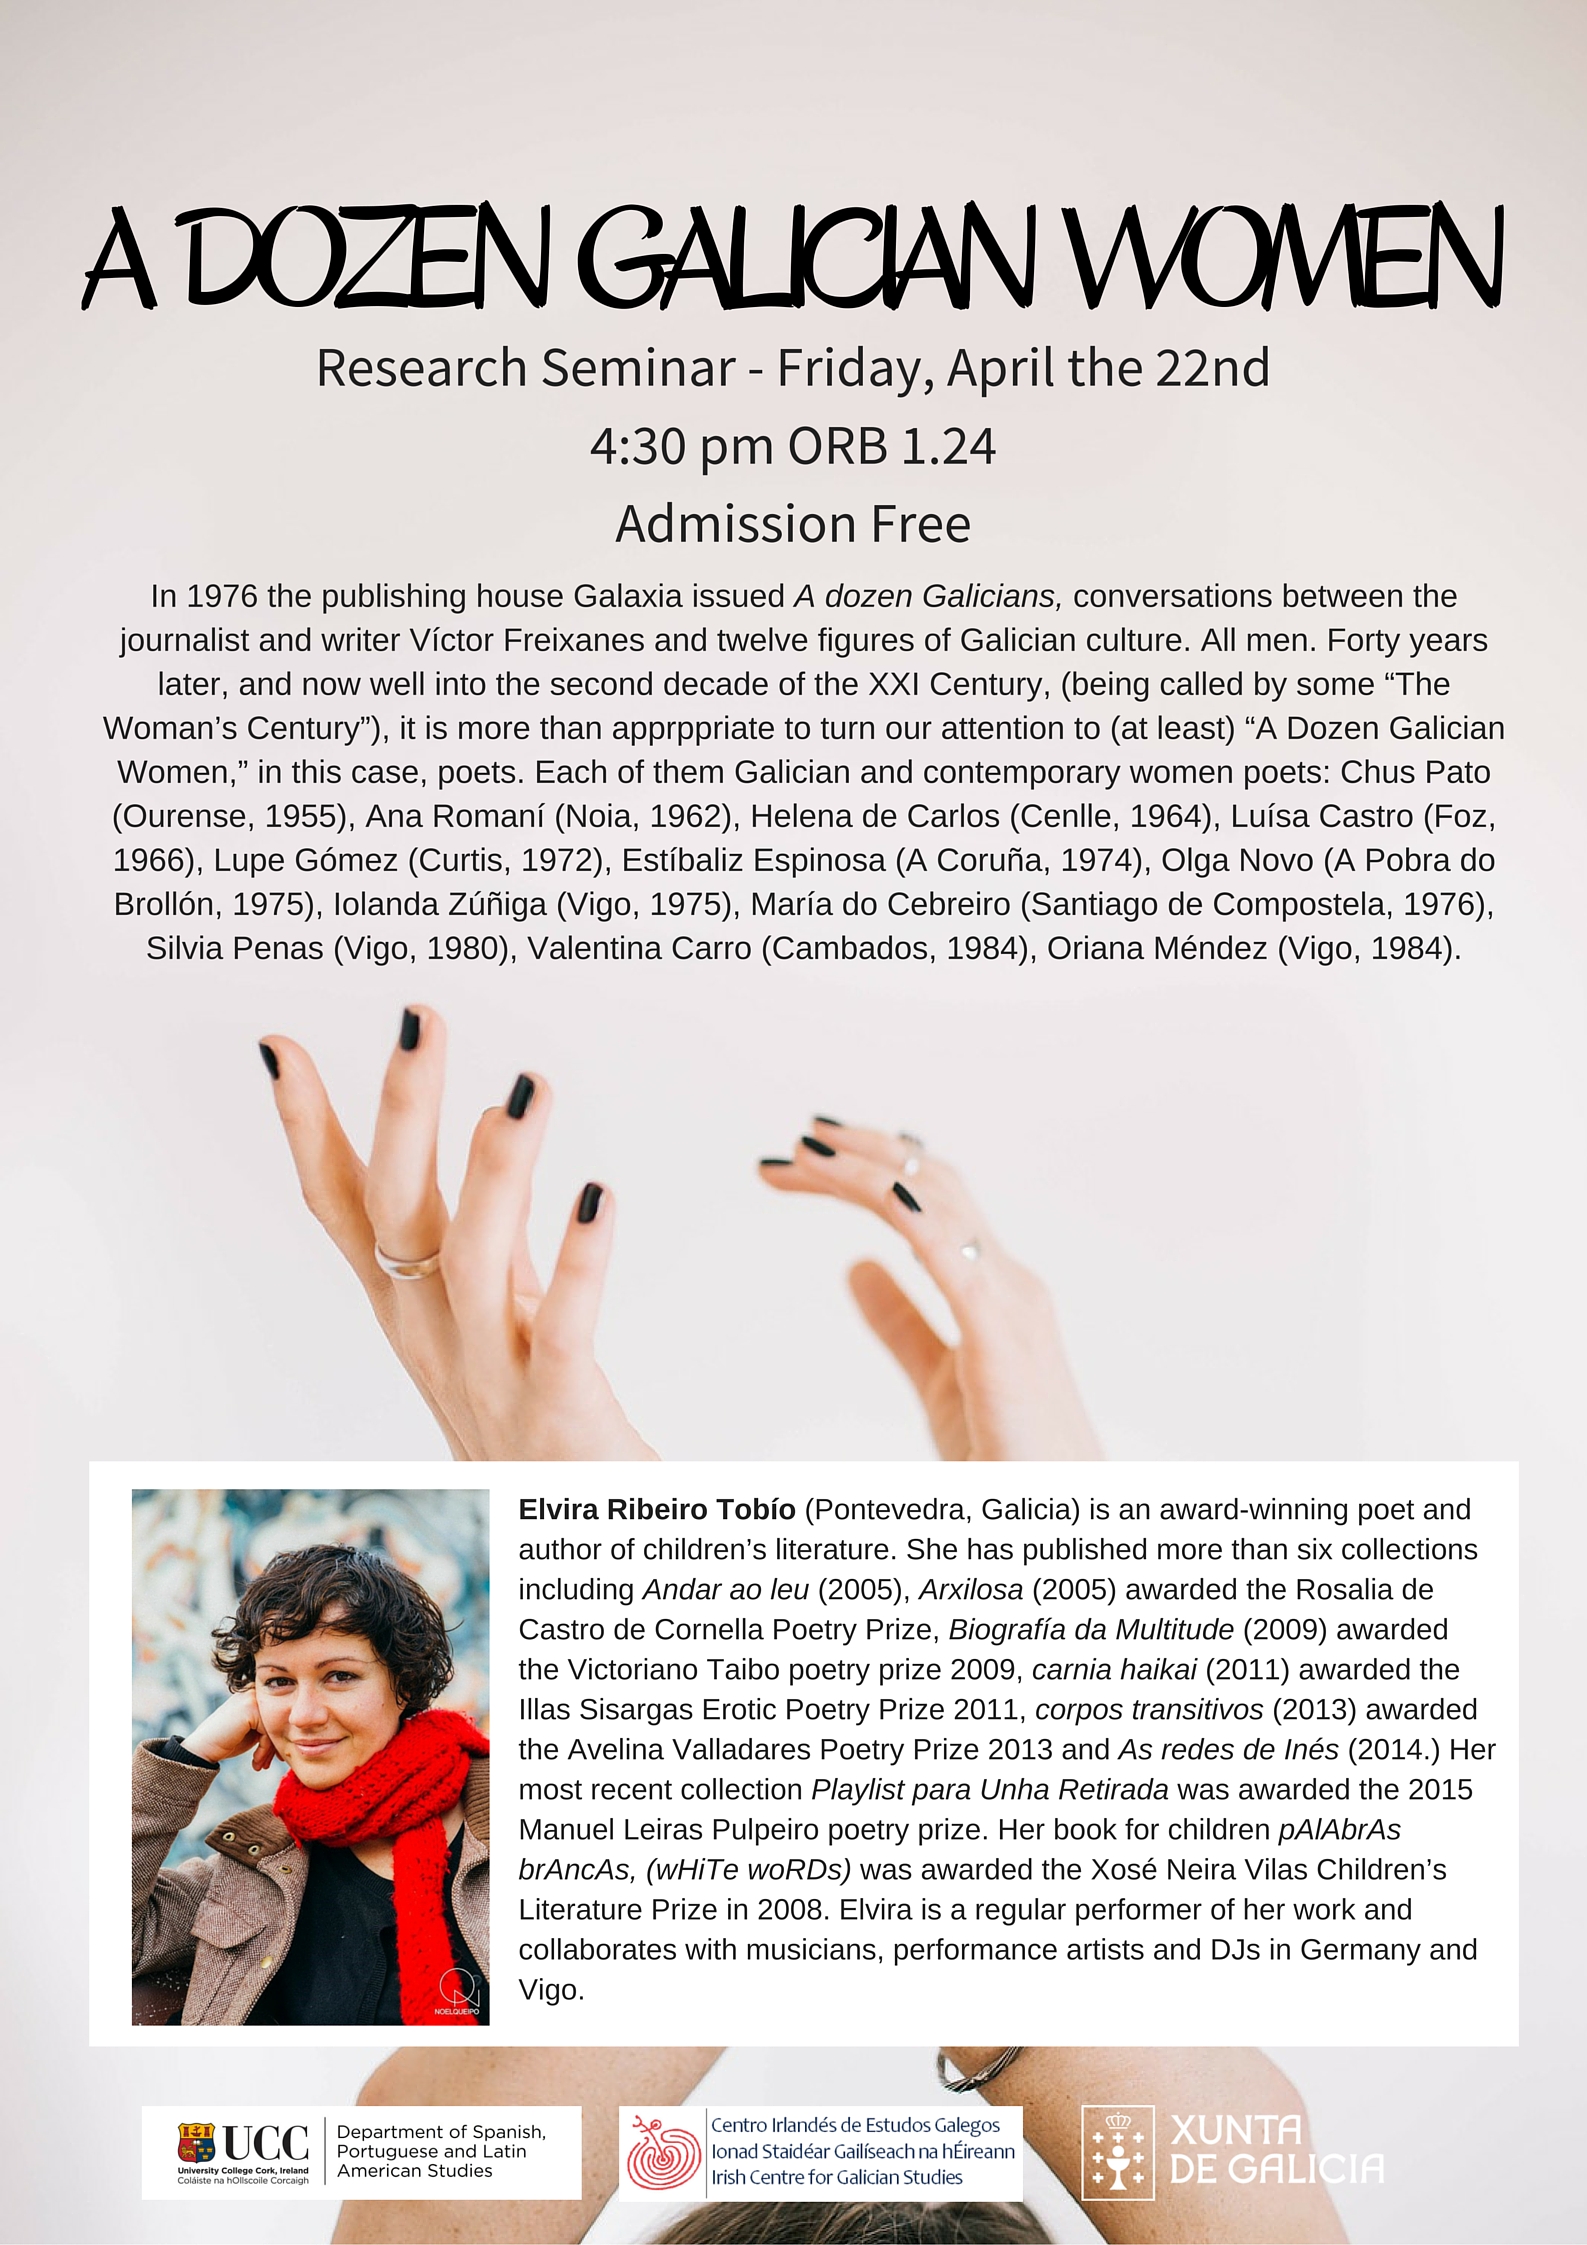 2016. April 18th. A dozen Galician women - Research seminar with Elvira Ribeiro